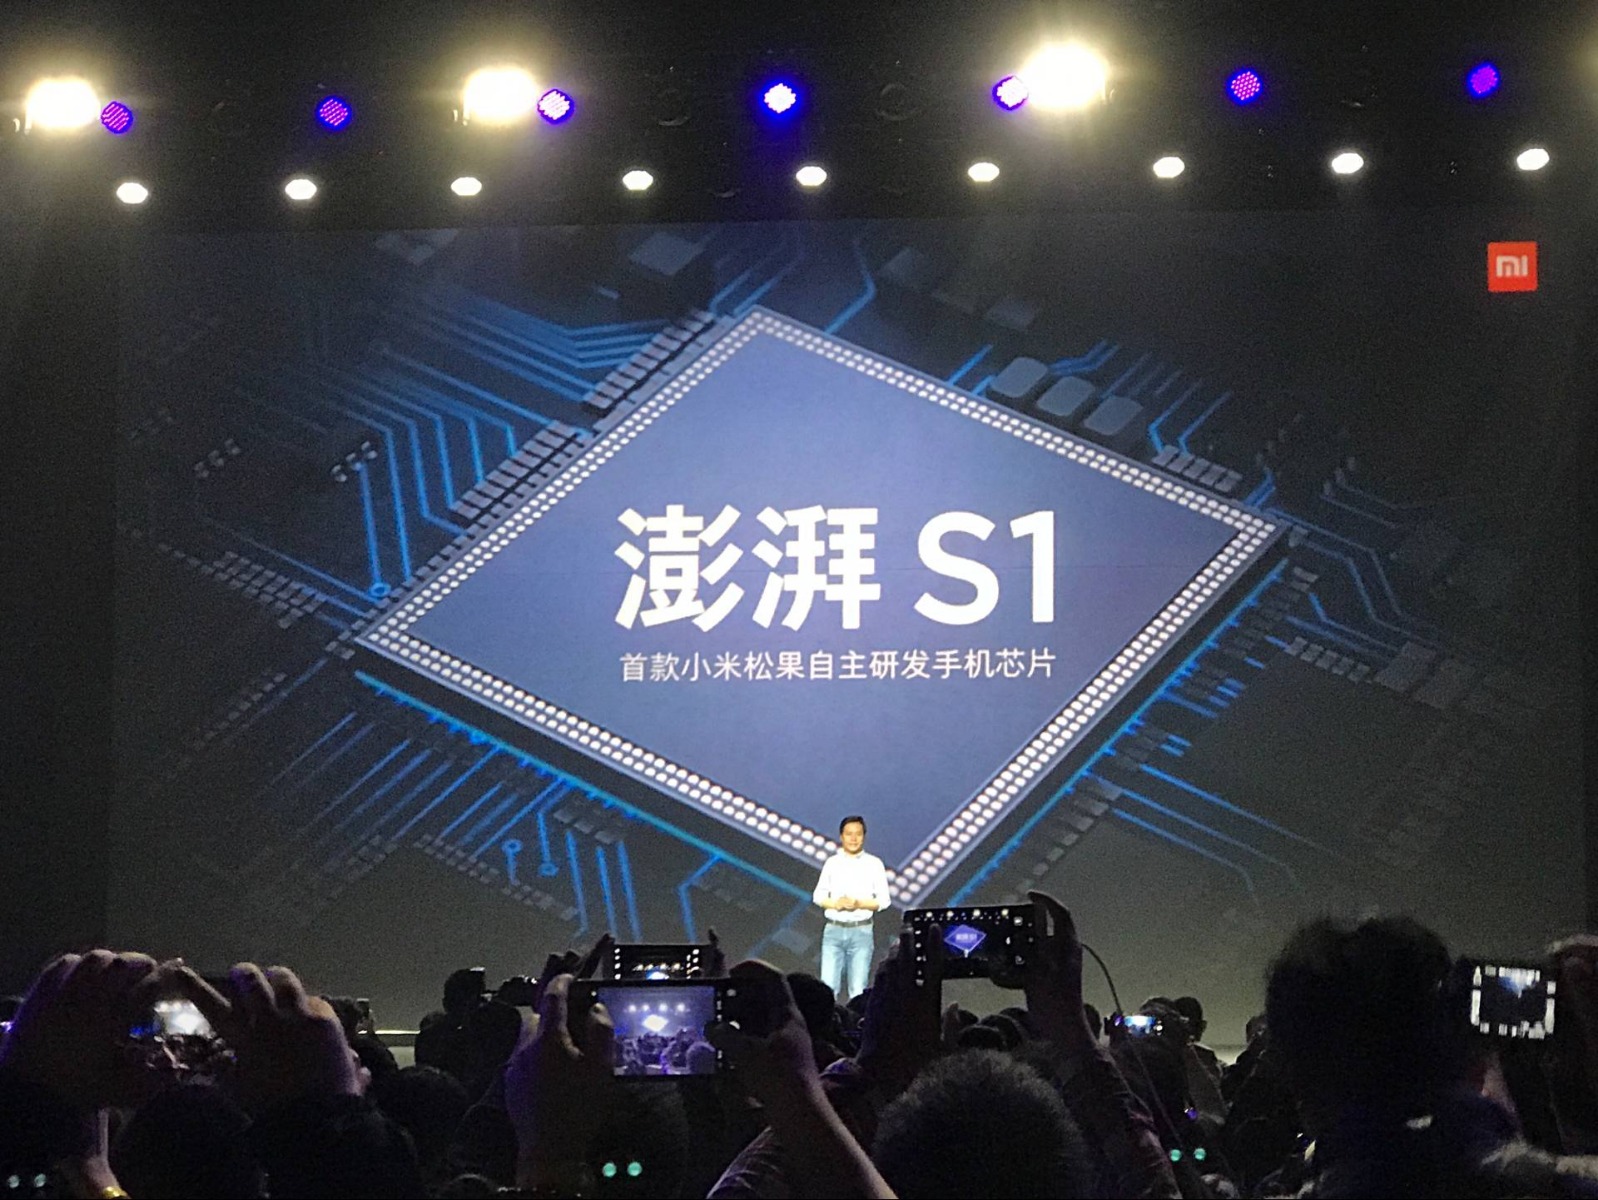 Điện thoại Nokia sẽ sử dụng vi xử lý Surge S1 của Xiaomi